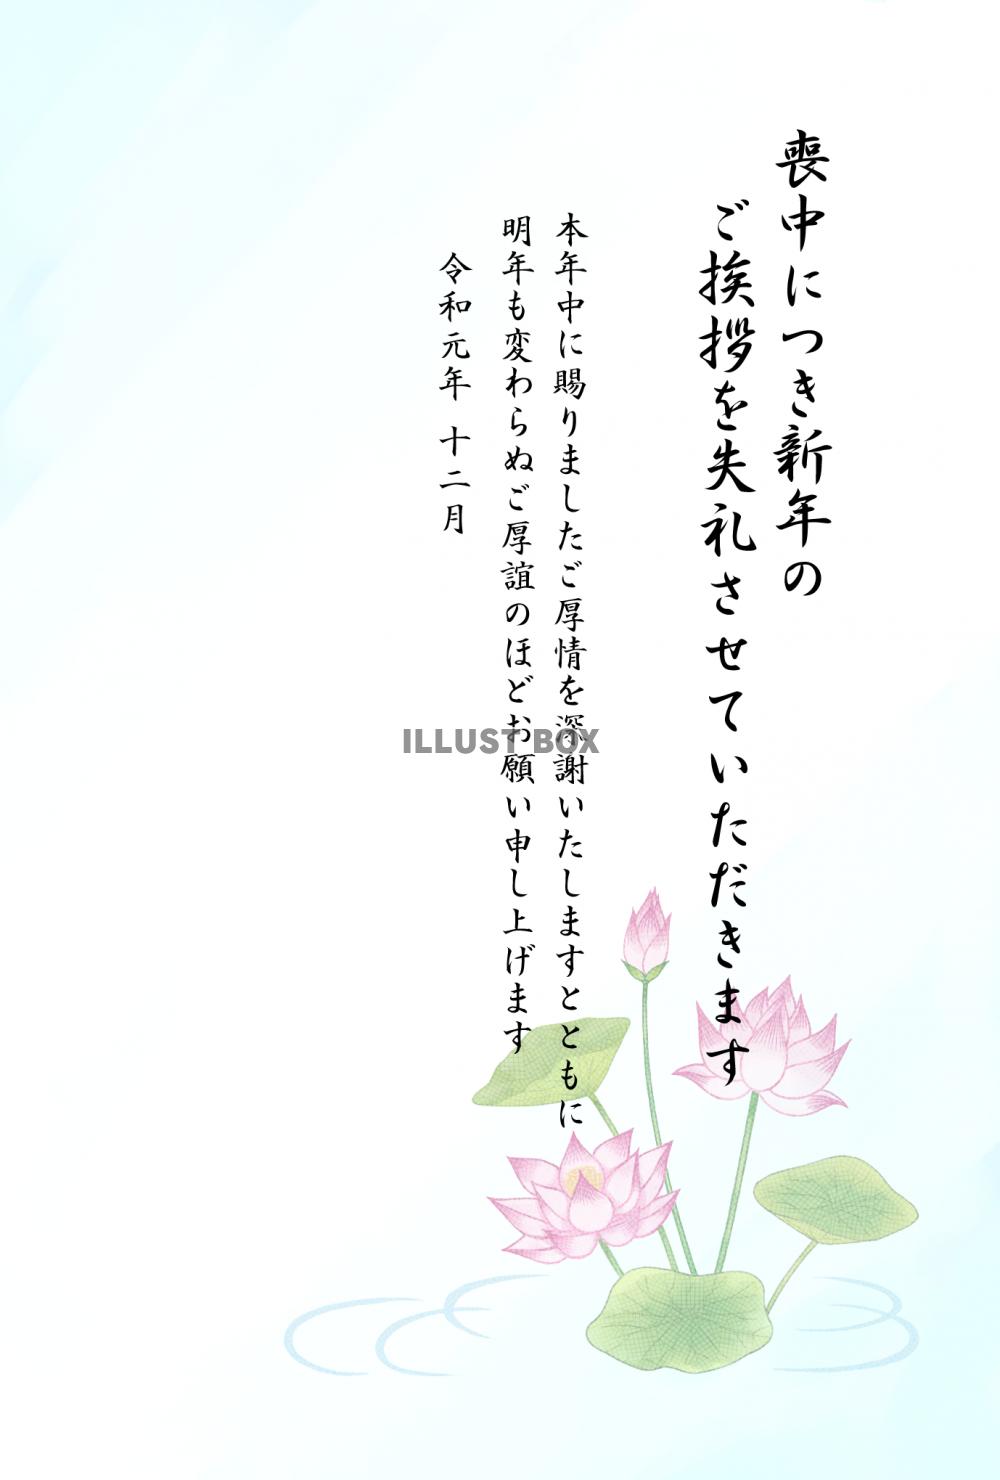 12か月の日本の花 イラスト素材 3080702 フォトライブラリー